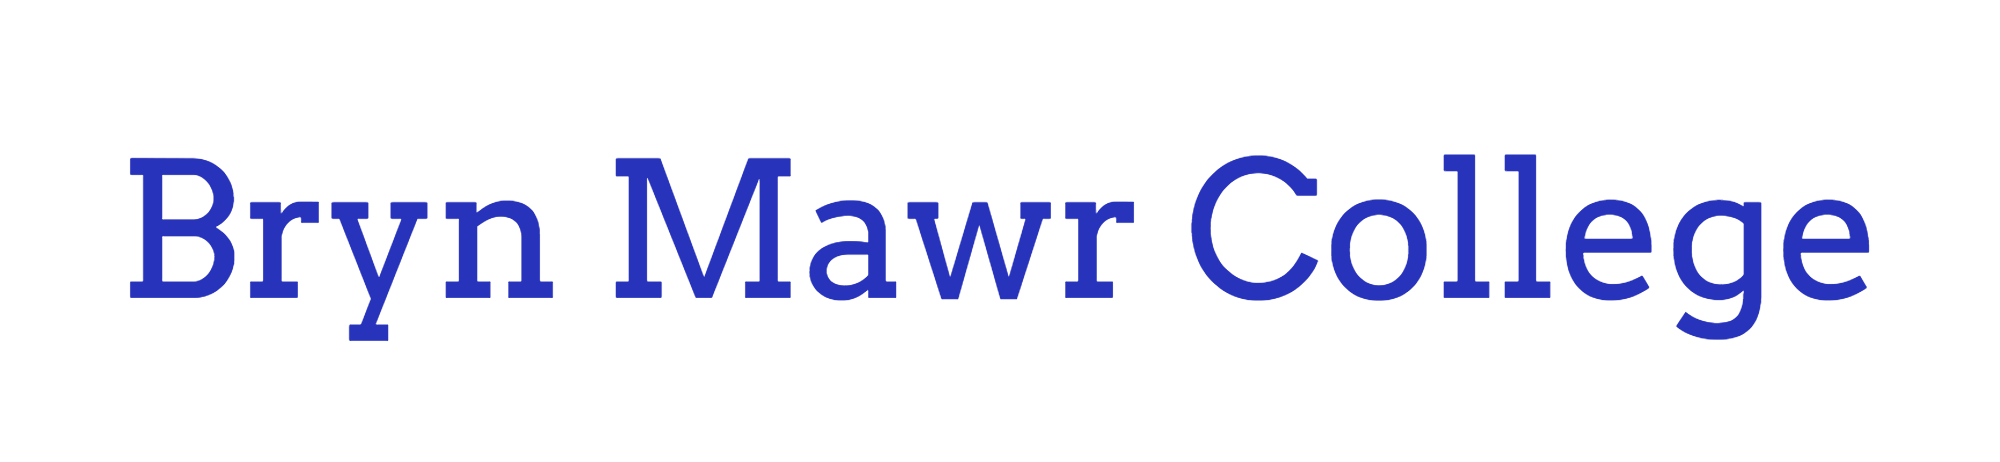 Bryn Mawr College-logo.png